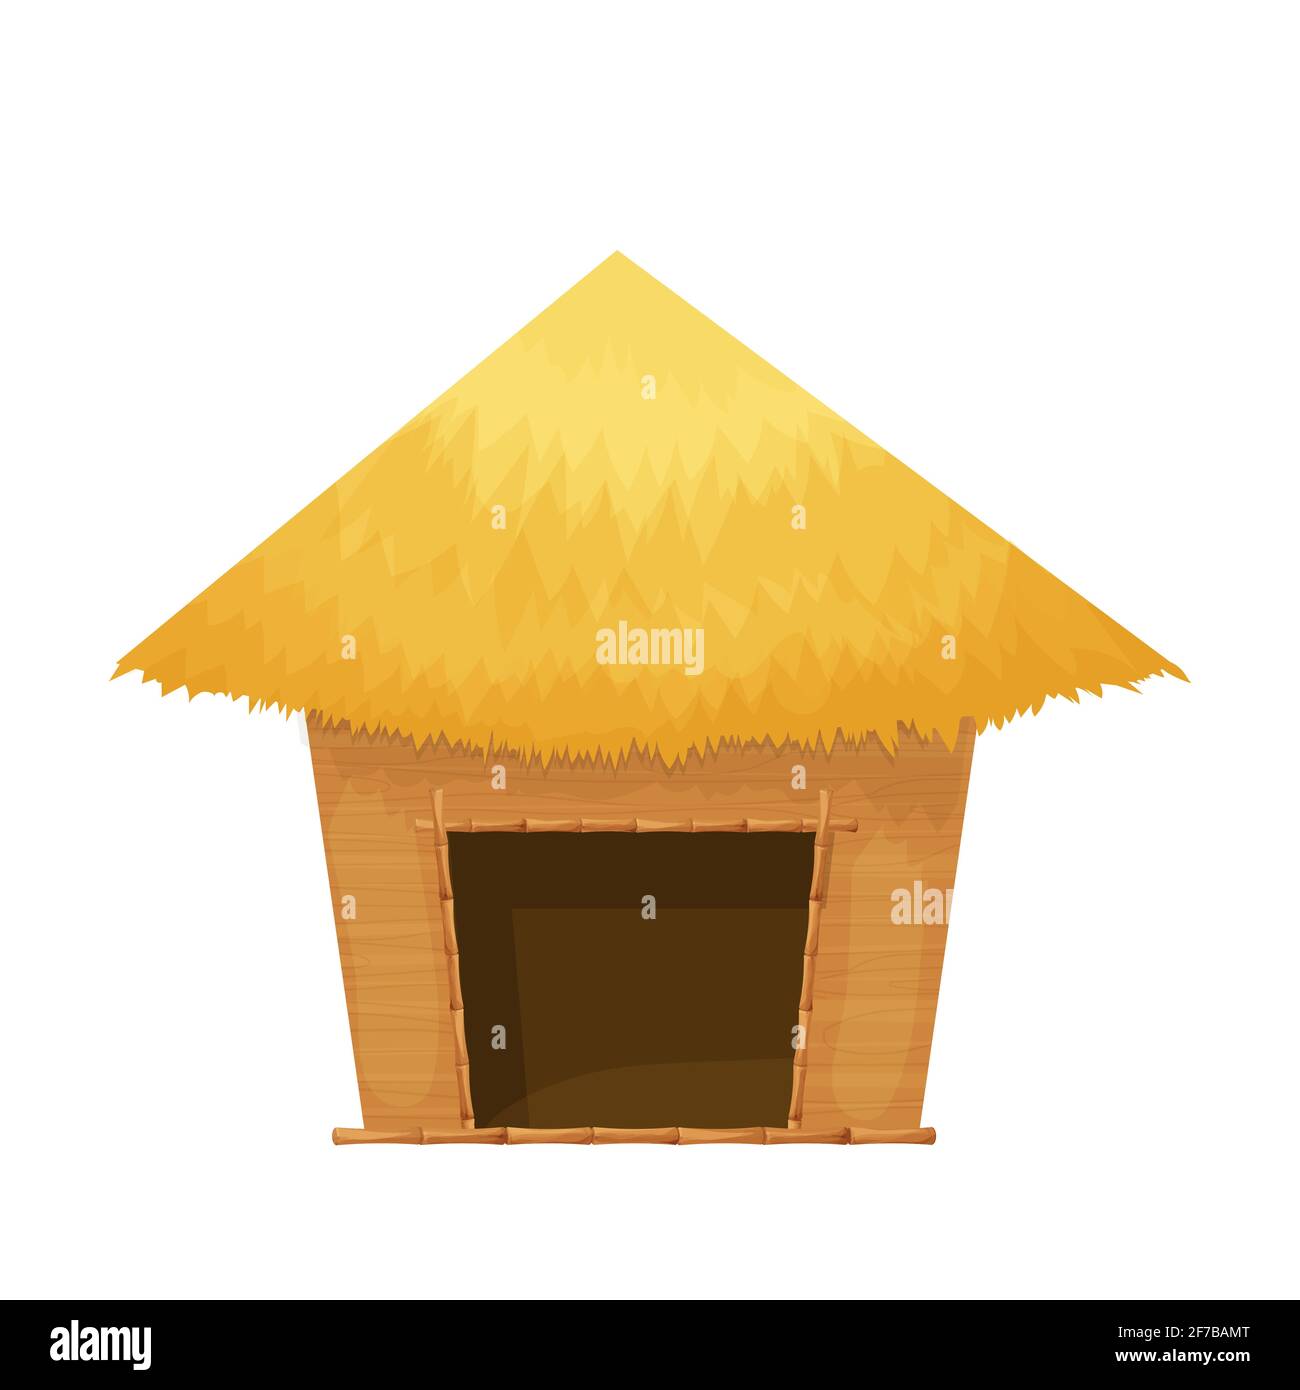 Strandhütte oder Bungalow mit Strohdach, Holz im Cartoon-Stil isoliert auf weißem Hintergrund. Bambushütte, kleines Haus exotisches Objekt. Vektorgrafik Stock Vektor